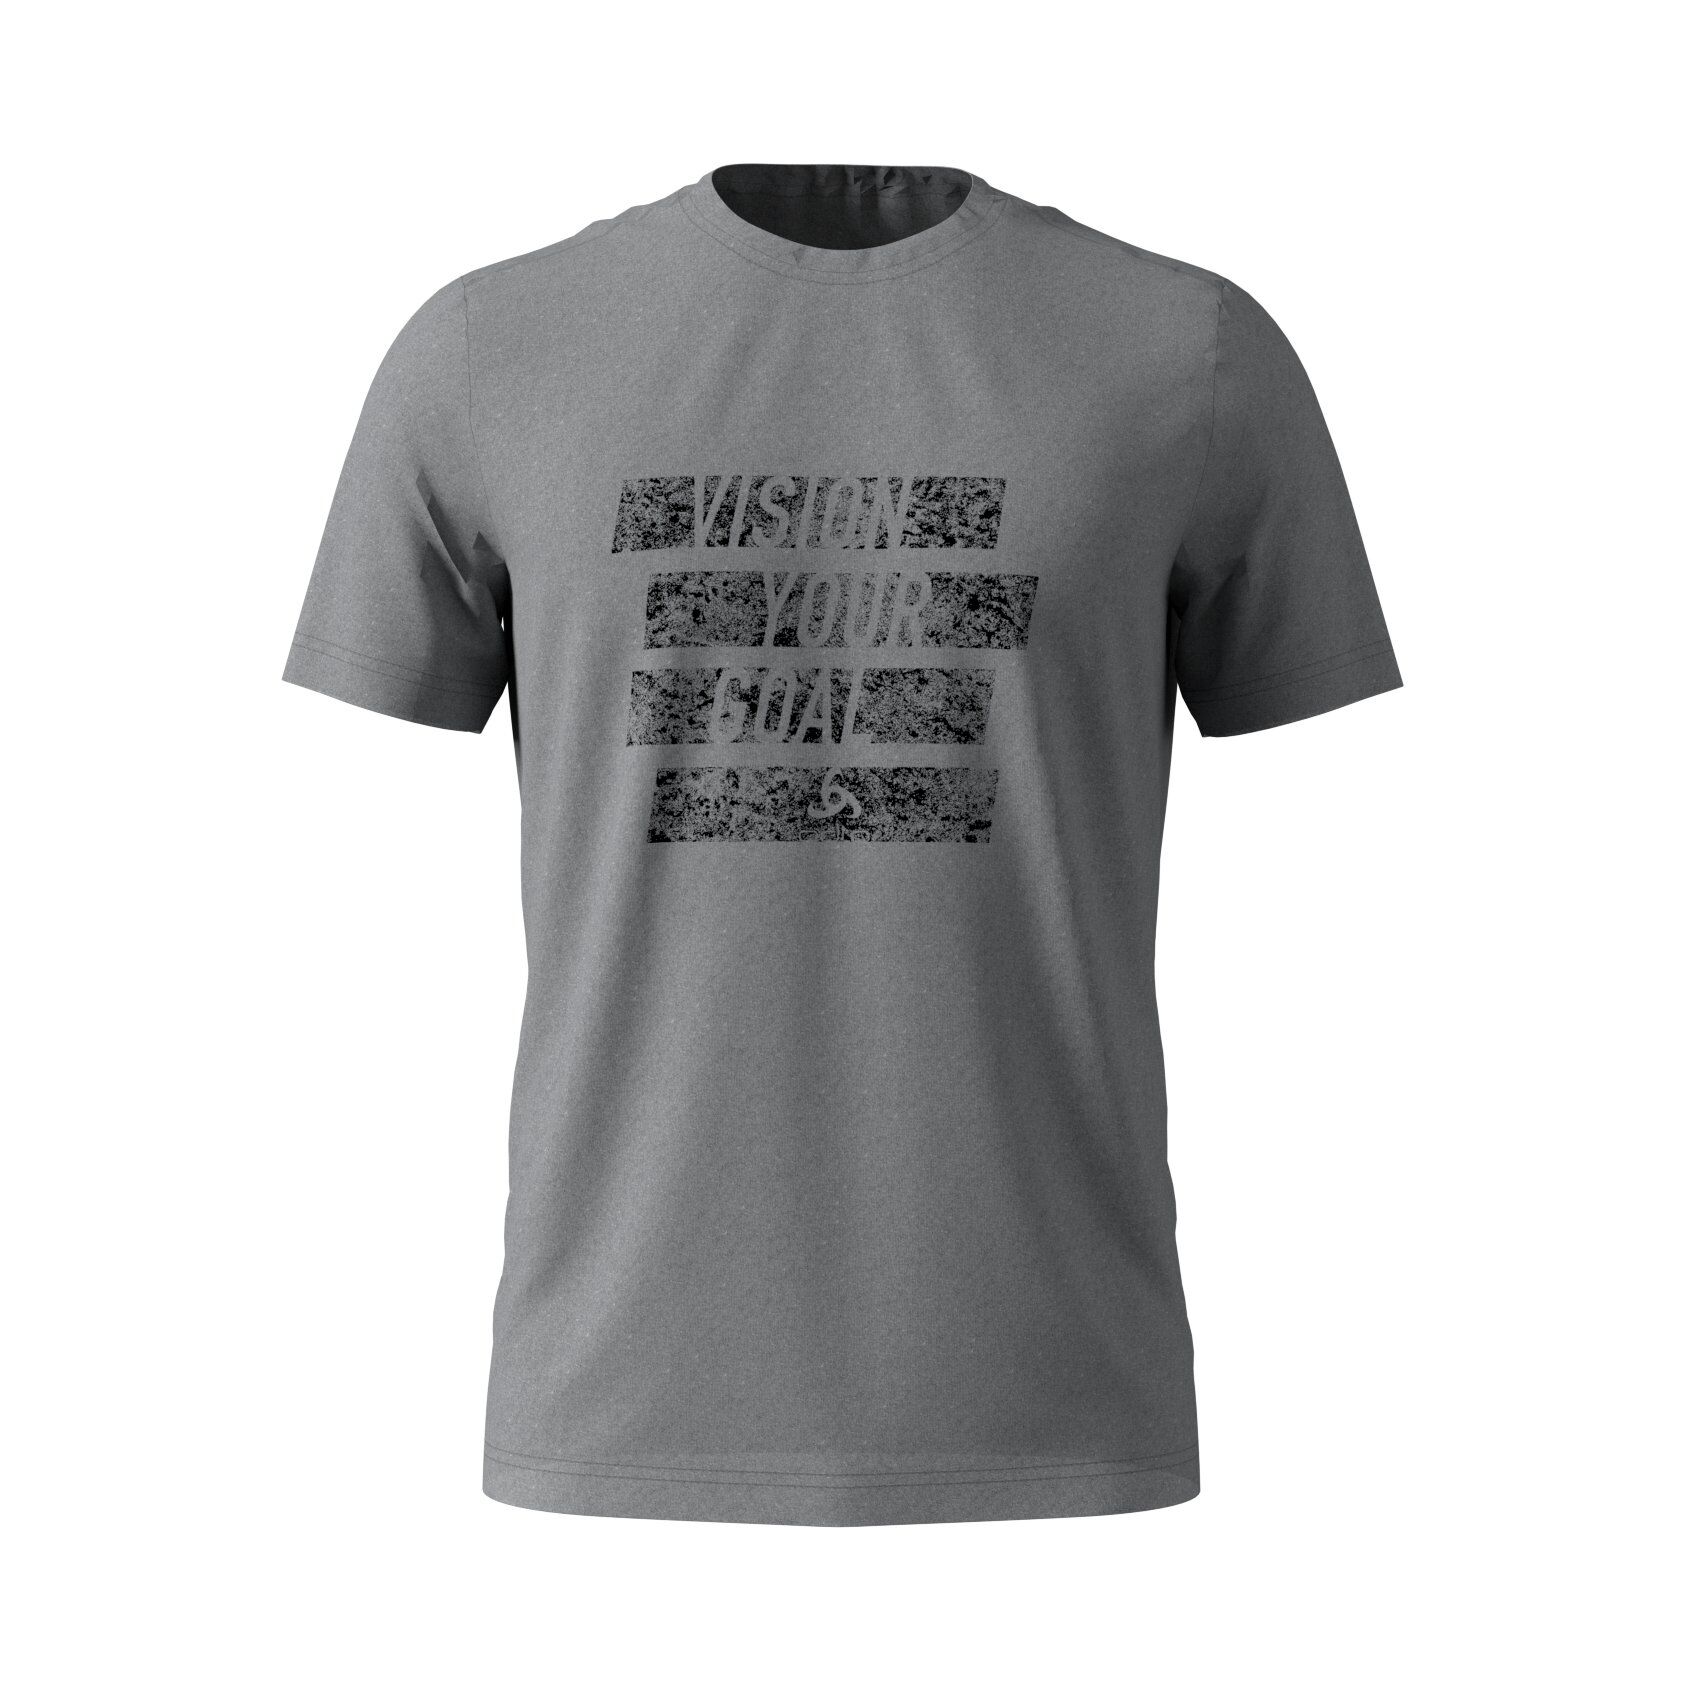 Odlo Millennium Element Print T-Shirt S/S Crew Neck - T-shirt - Men's